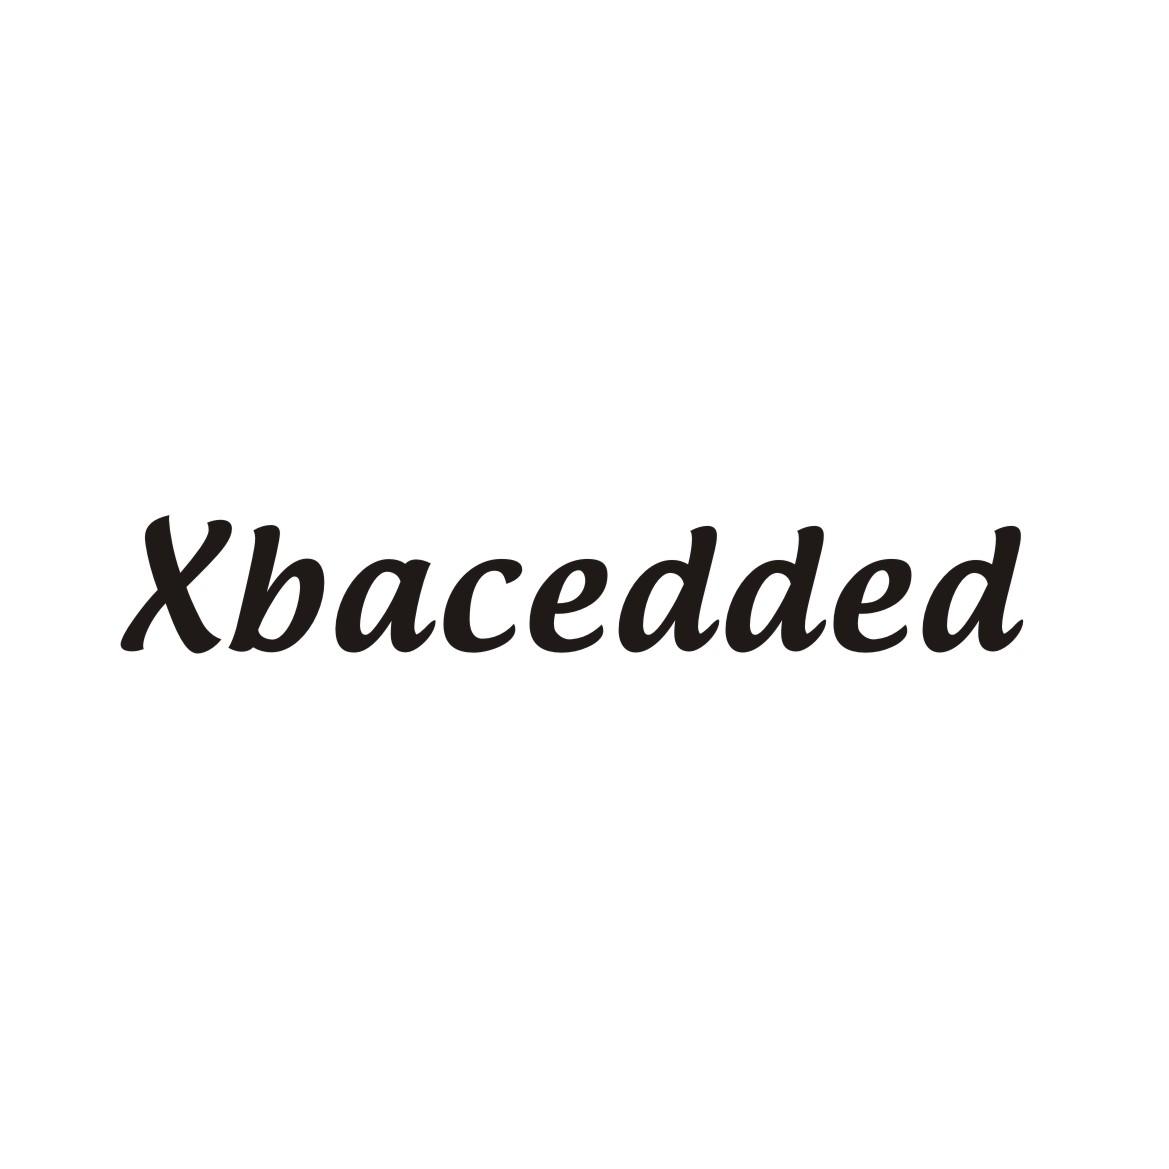 35类-广告销售XBACEDDED商标转让